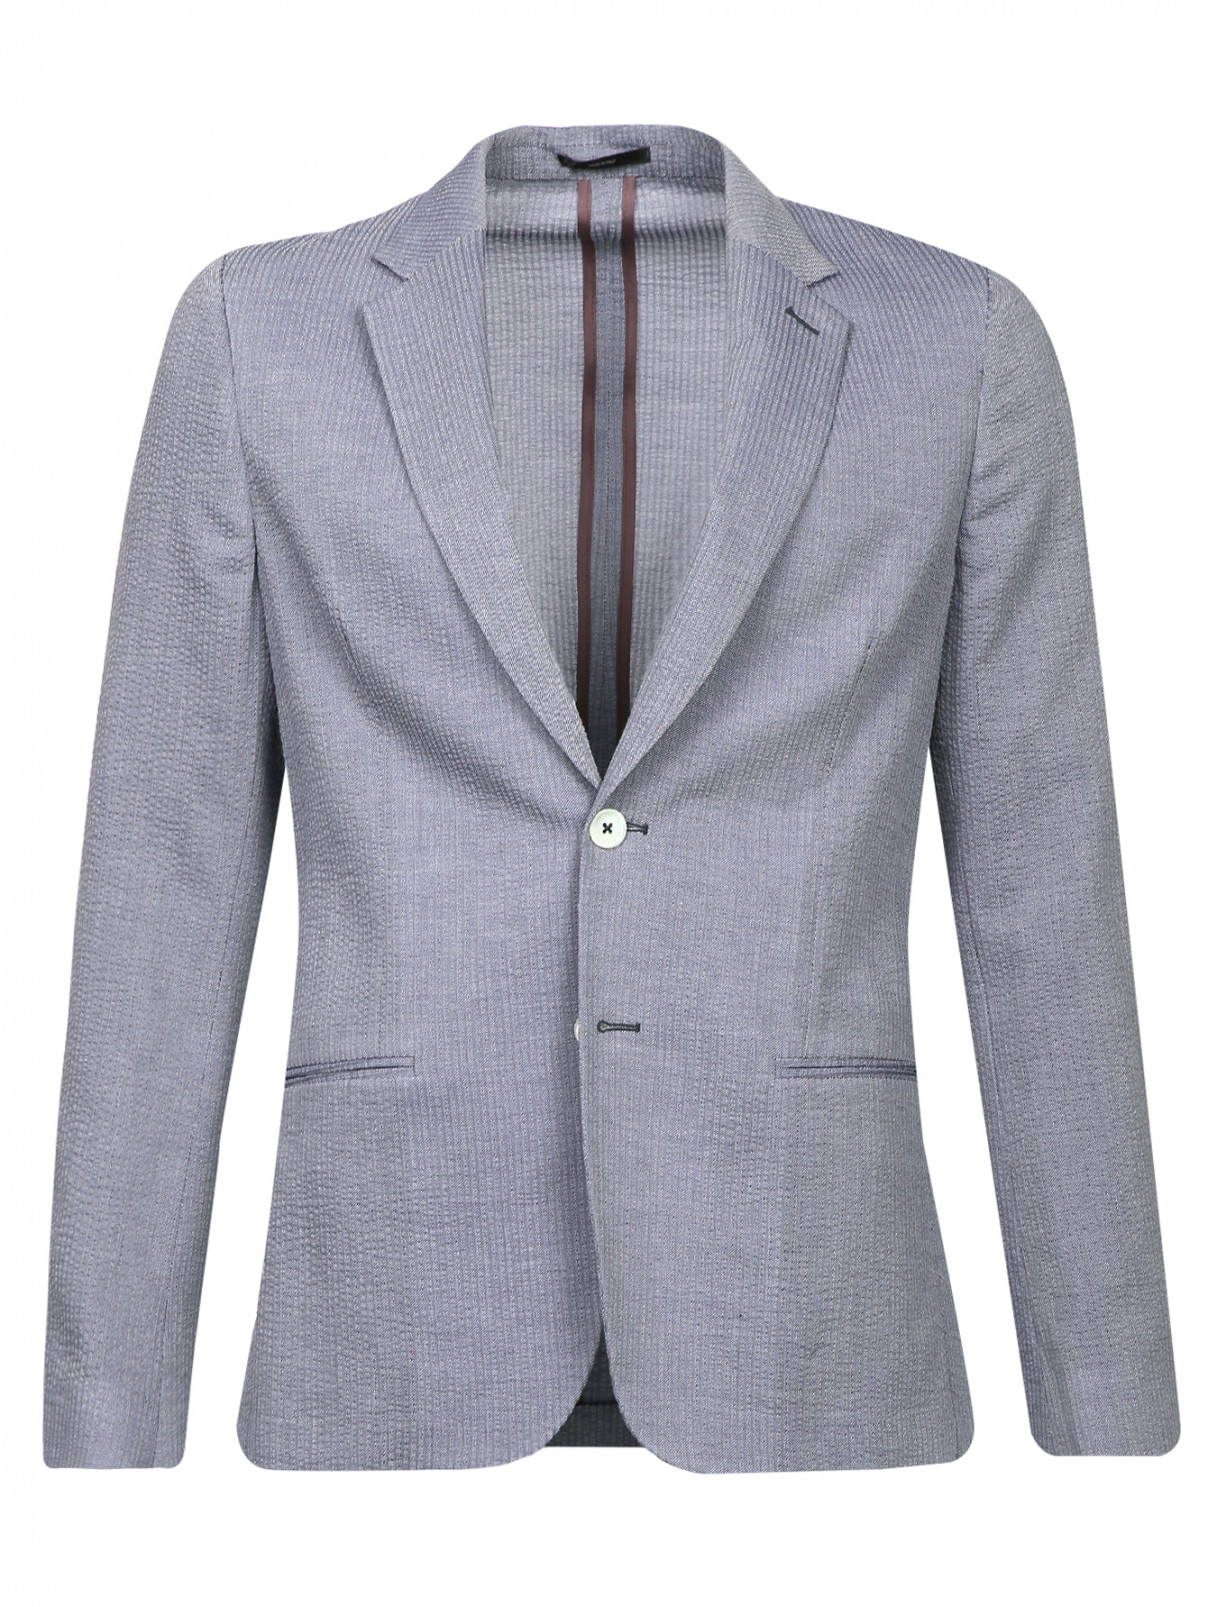 Пиджак из фактурного хлопка Paul Smith  –  Общий вид  – Цвет:  Серый